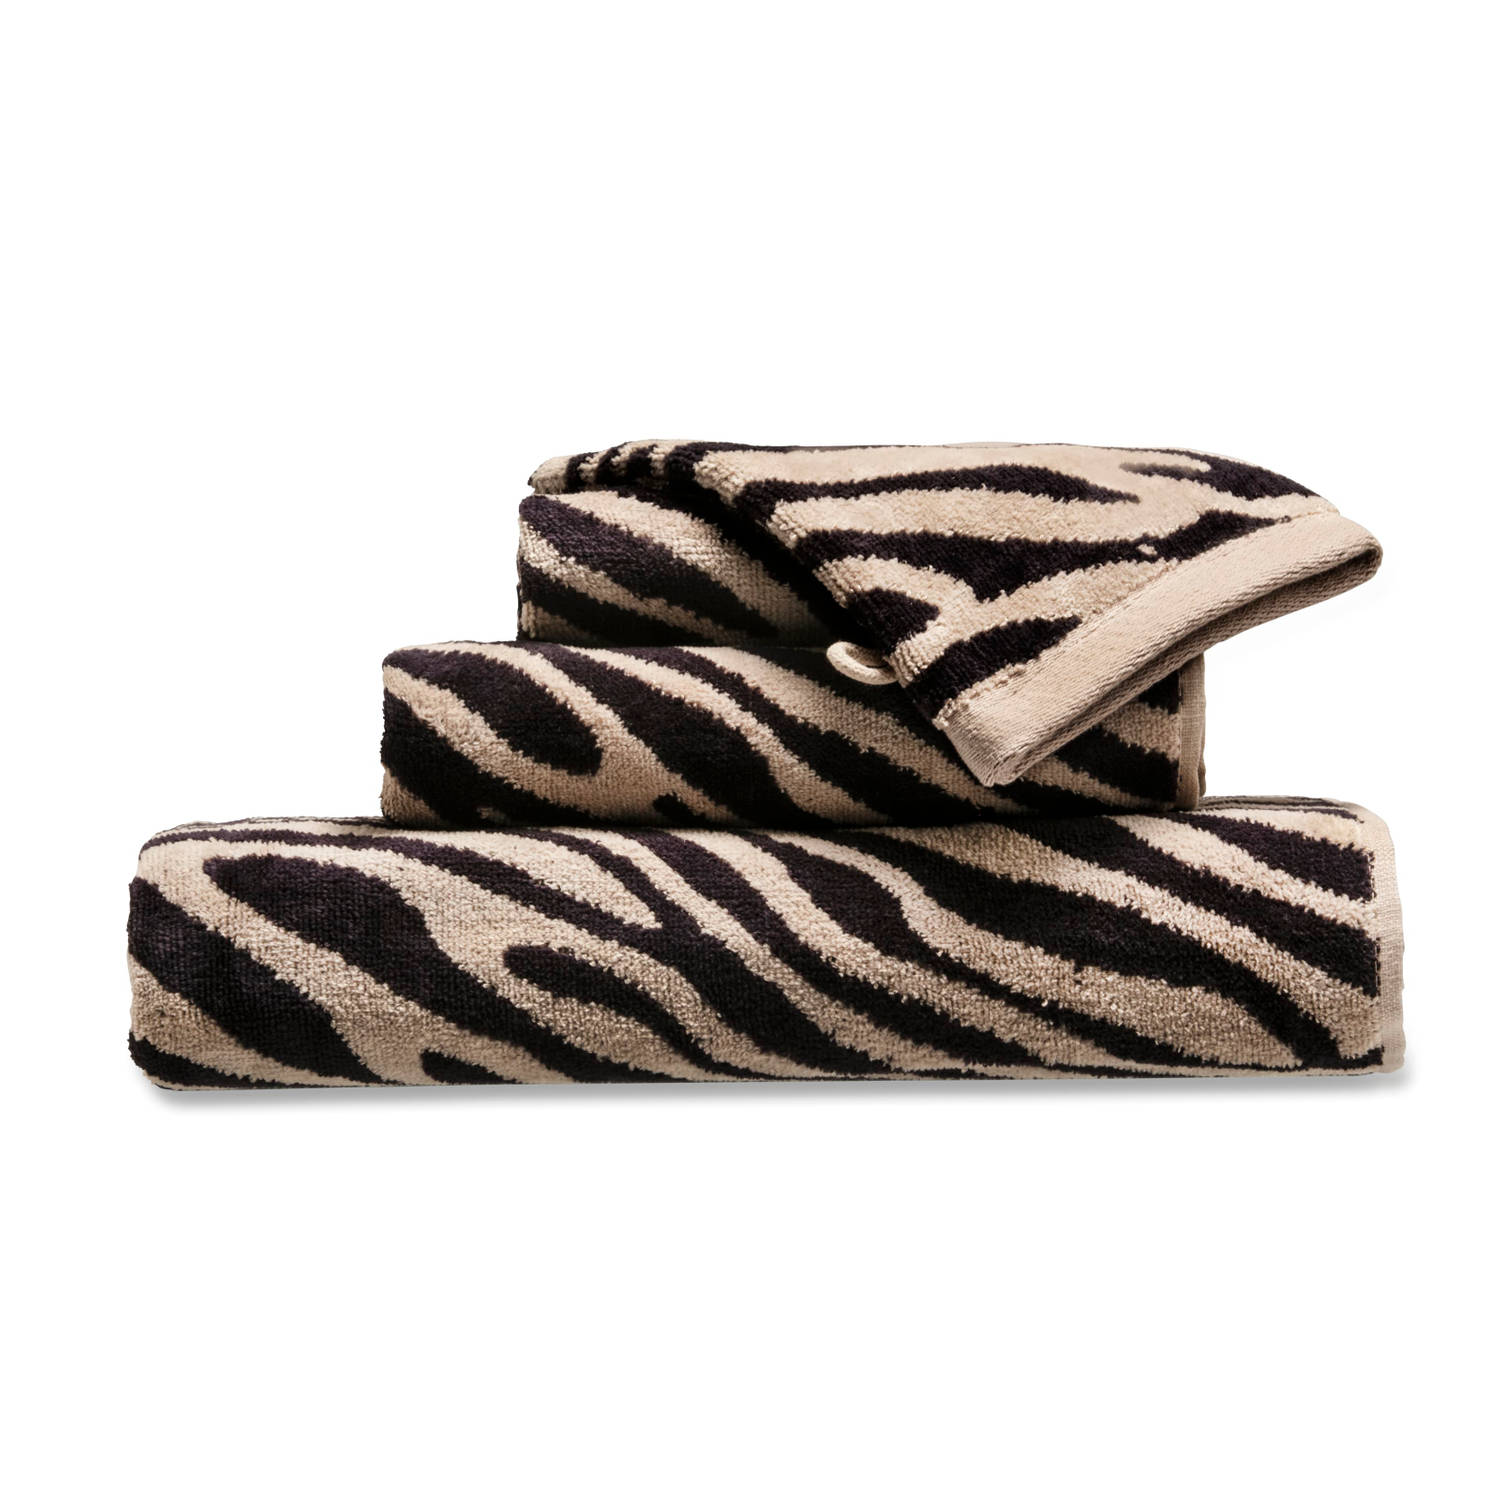 Alvast Zelden neutrale Blokker handdoek zebra - beige/zwart - 70x140 cm | Blokker